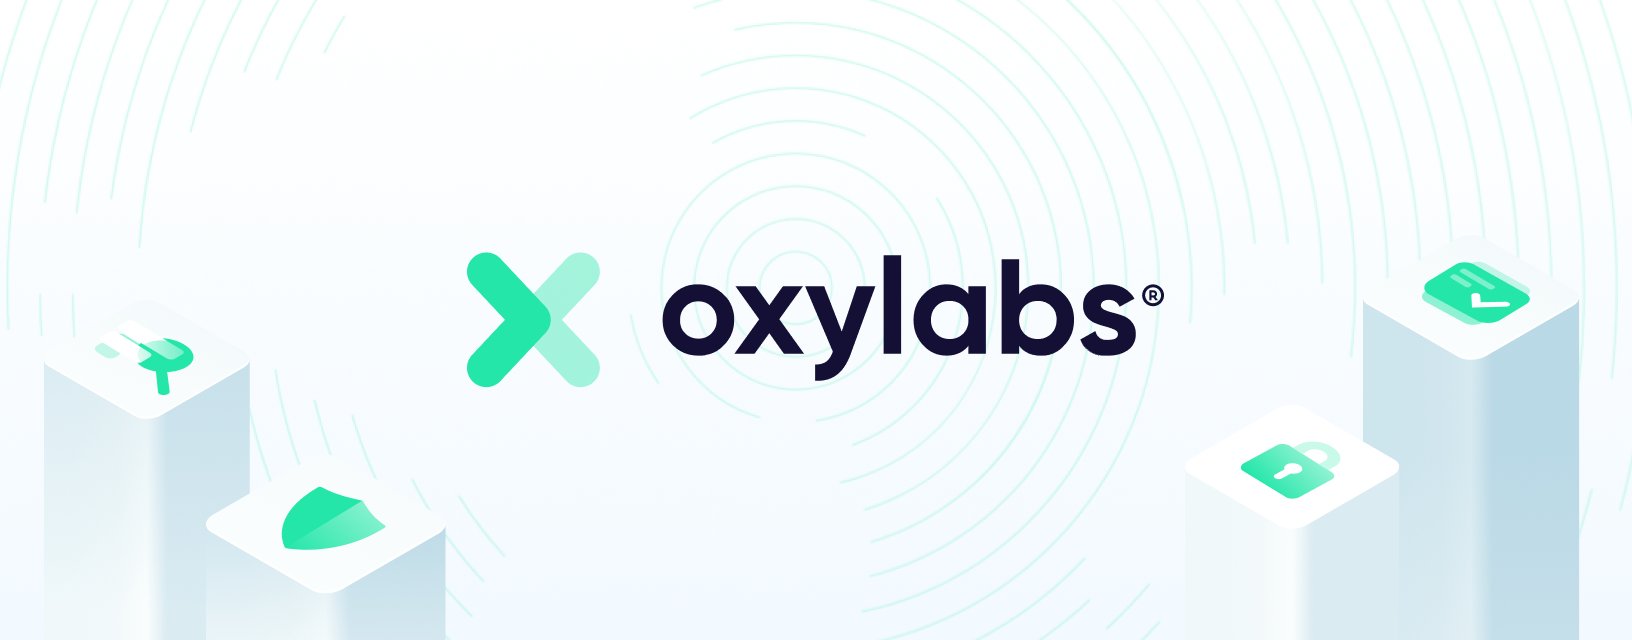 oxylabs_desktop